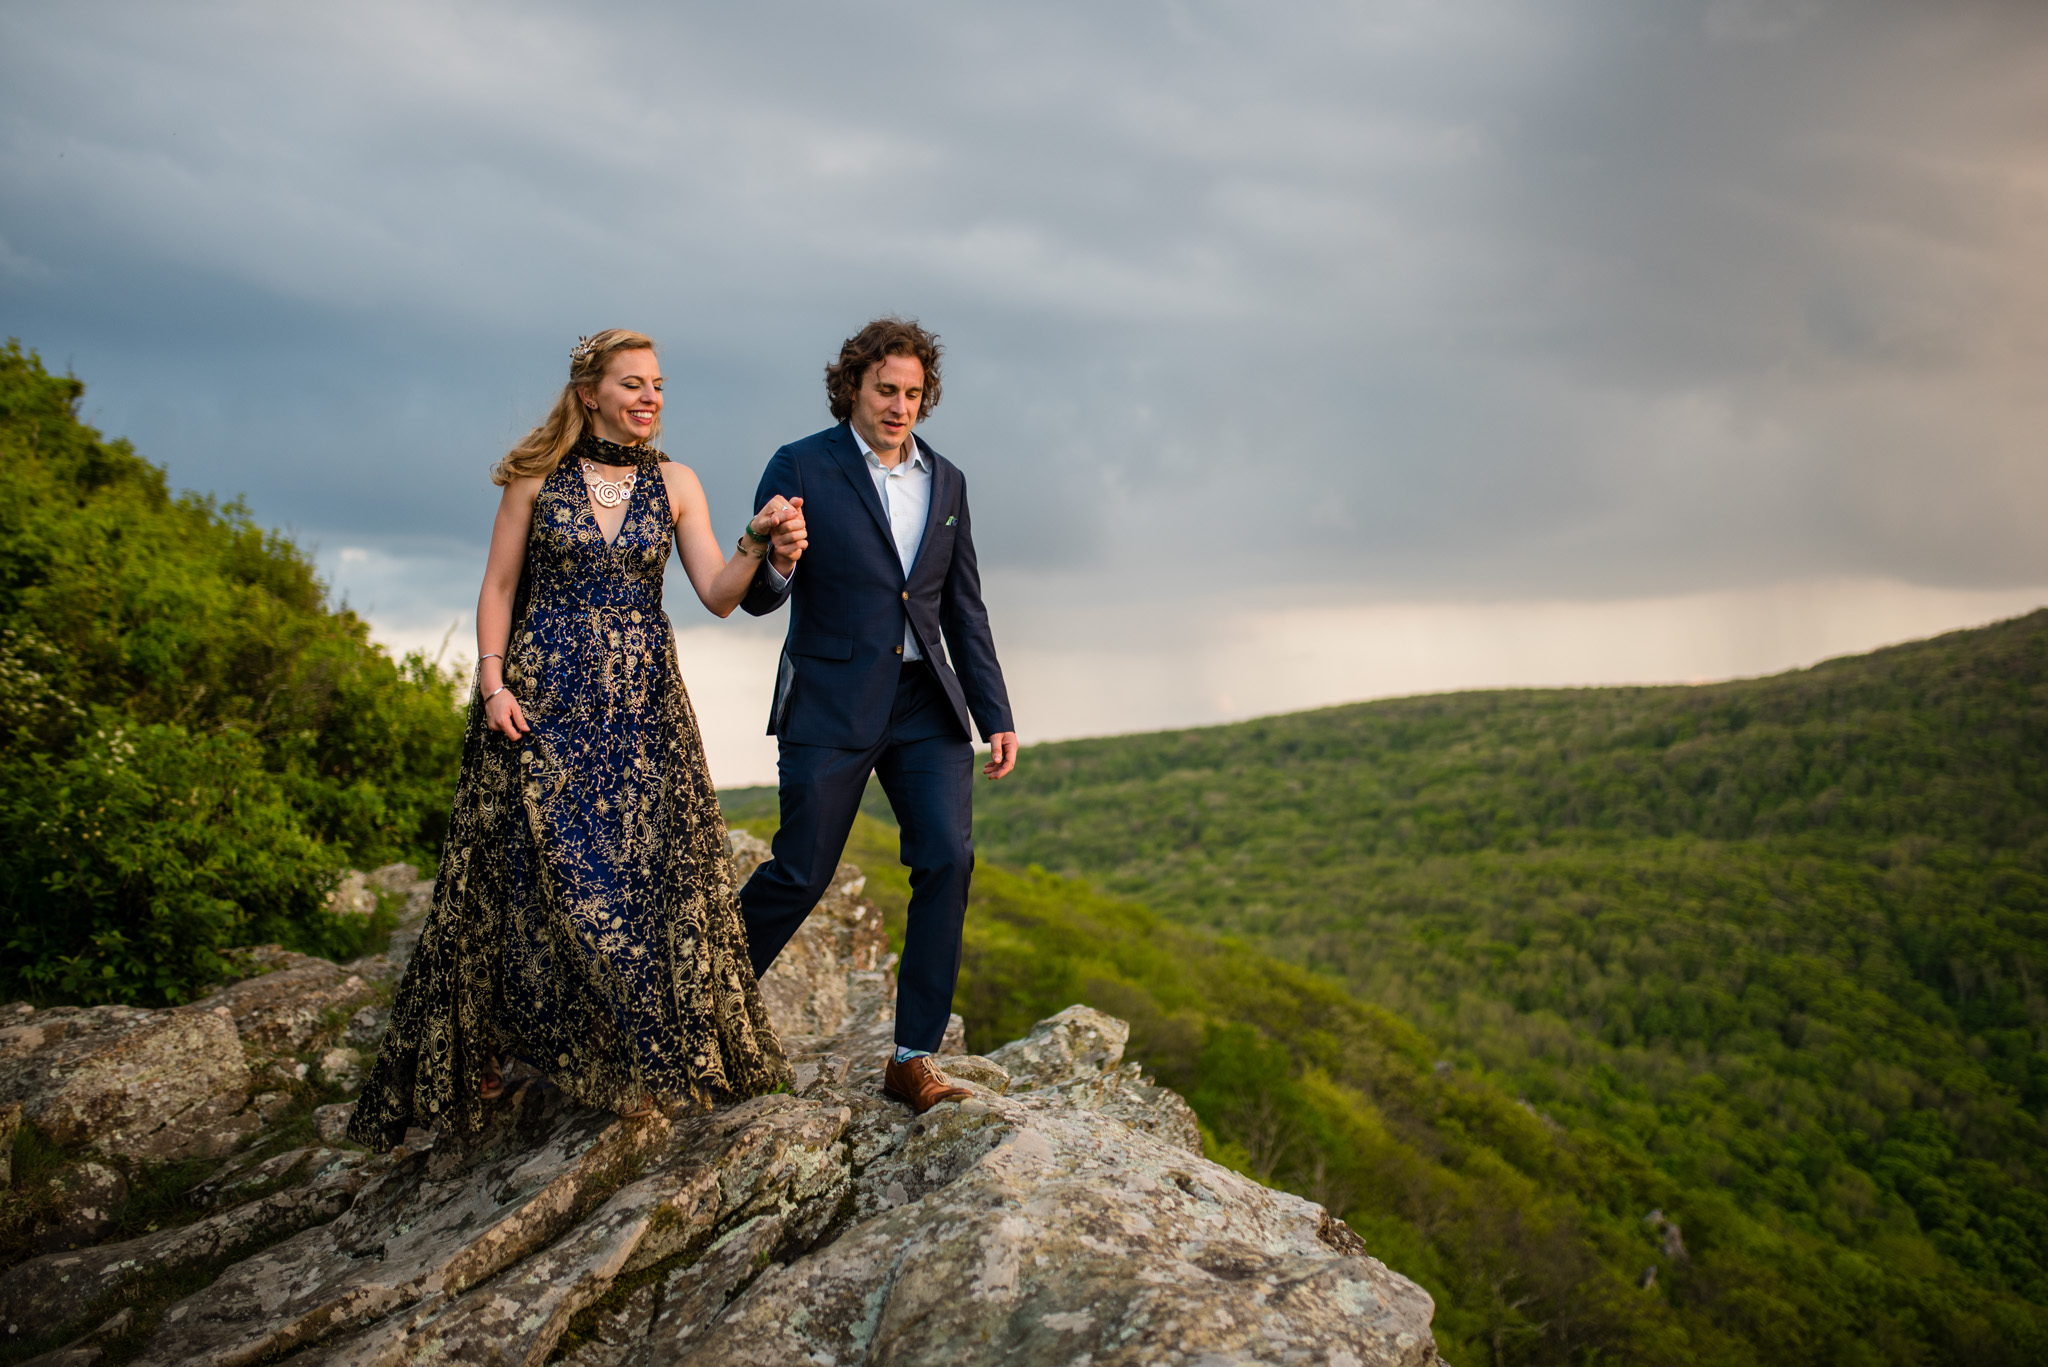 Mountaintop wedding photos